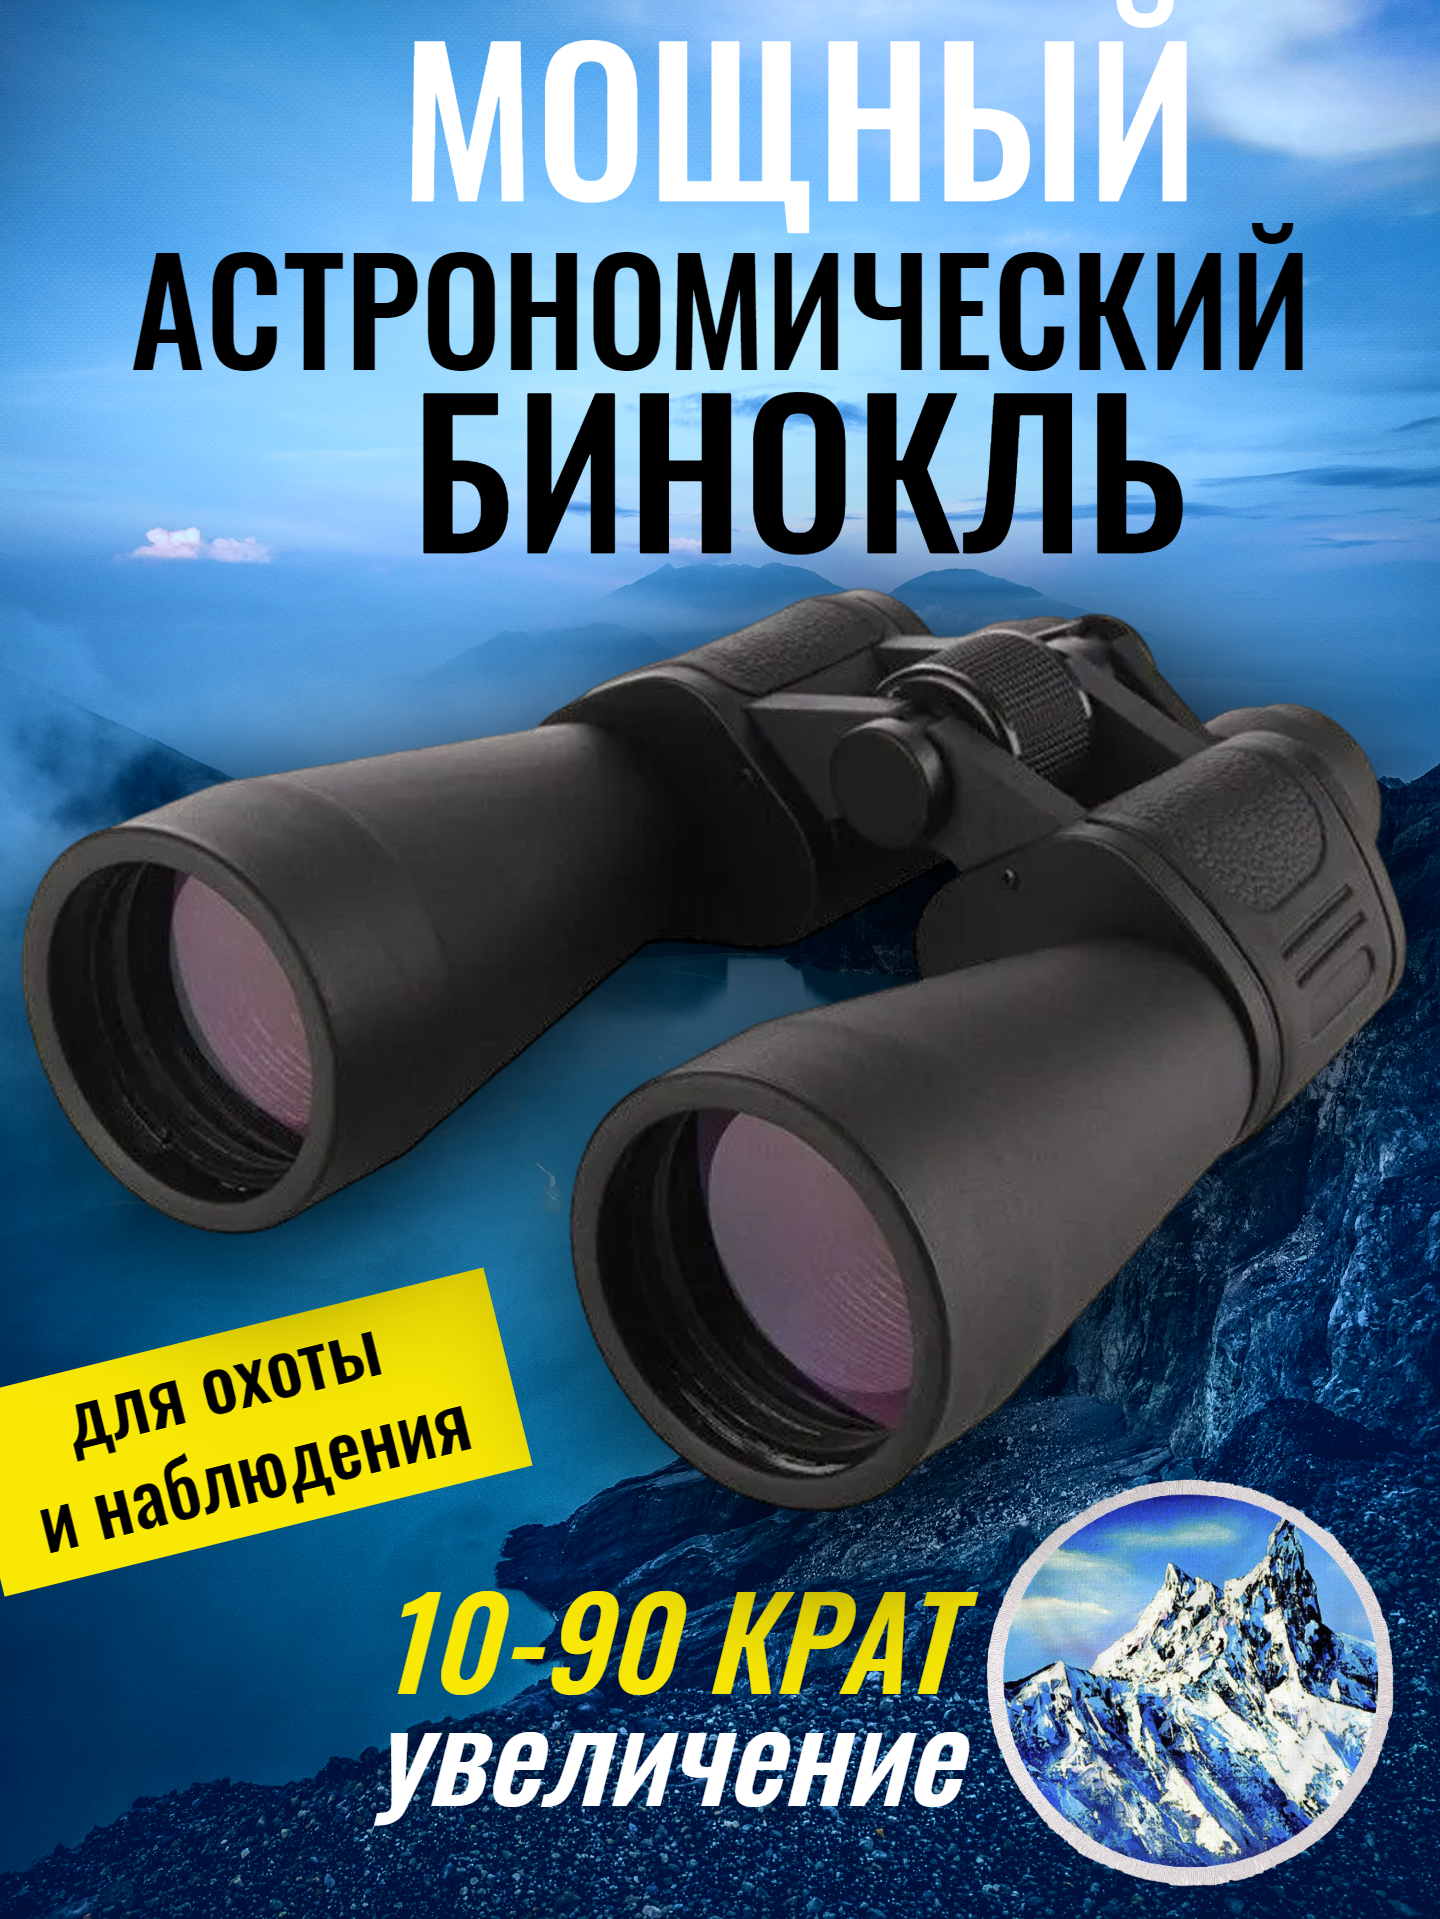 Мощный астрономический бинокль для охоты и наблюдений OpticView Spezial Astro 10-90x80